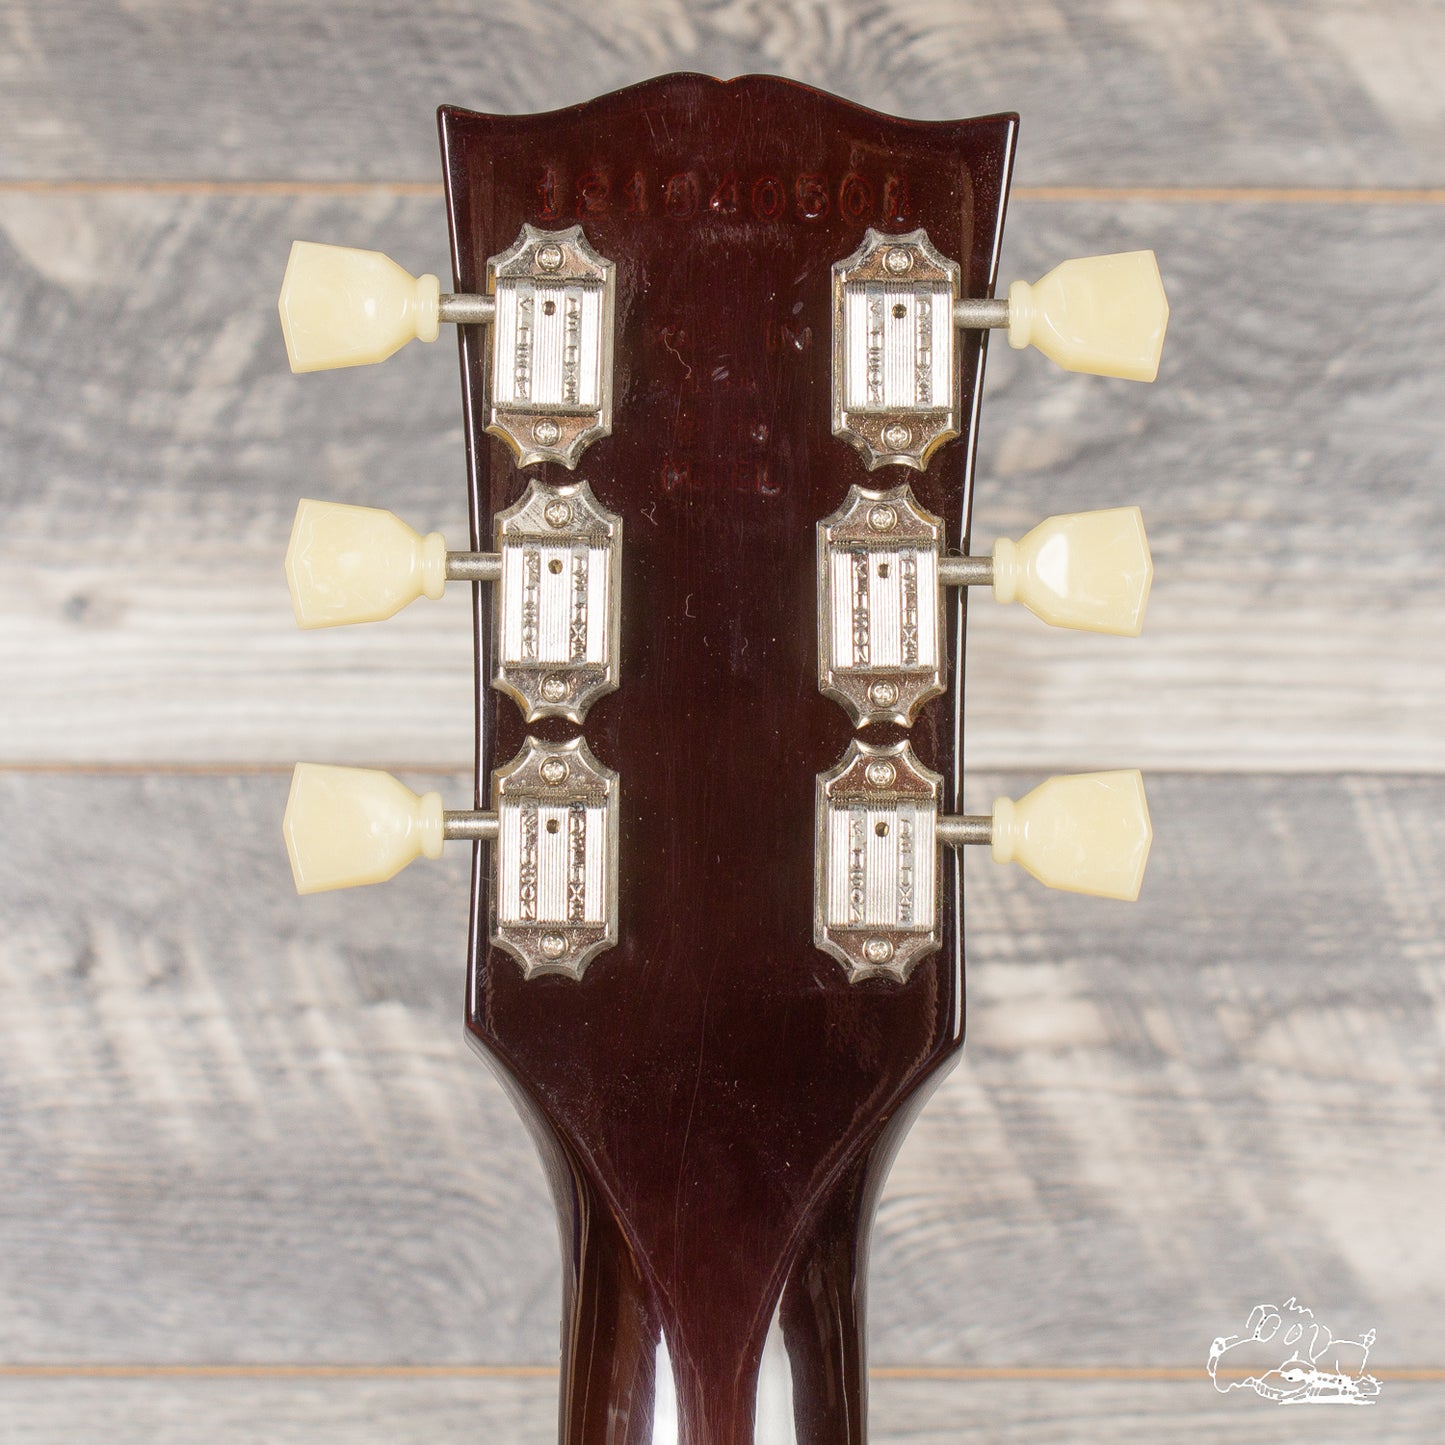 2014 Gibson SG Mahogany